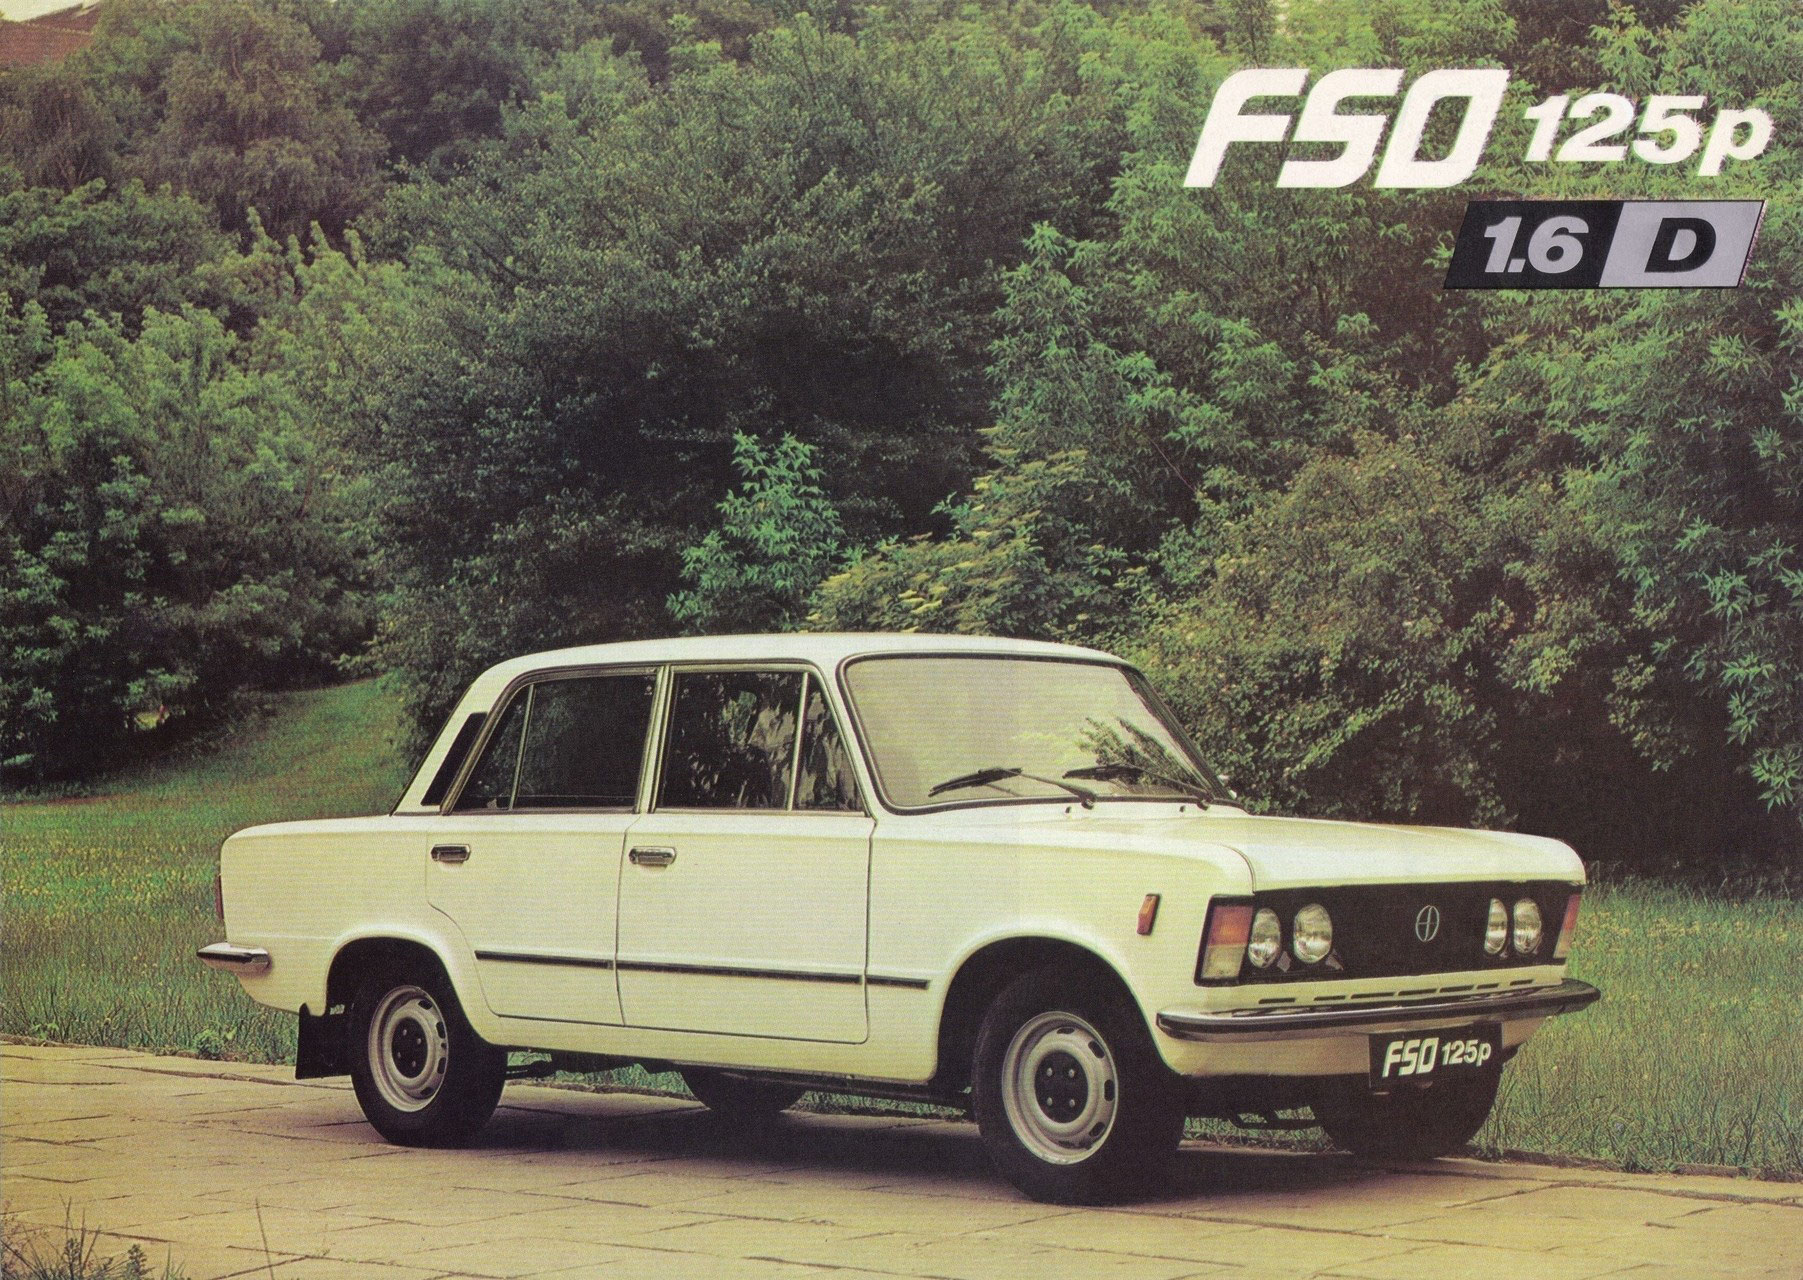 FSO 125p 1.6D Polski Fiat 125p/FSO 125p HISTORIA